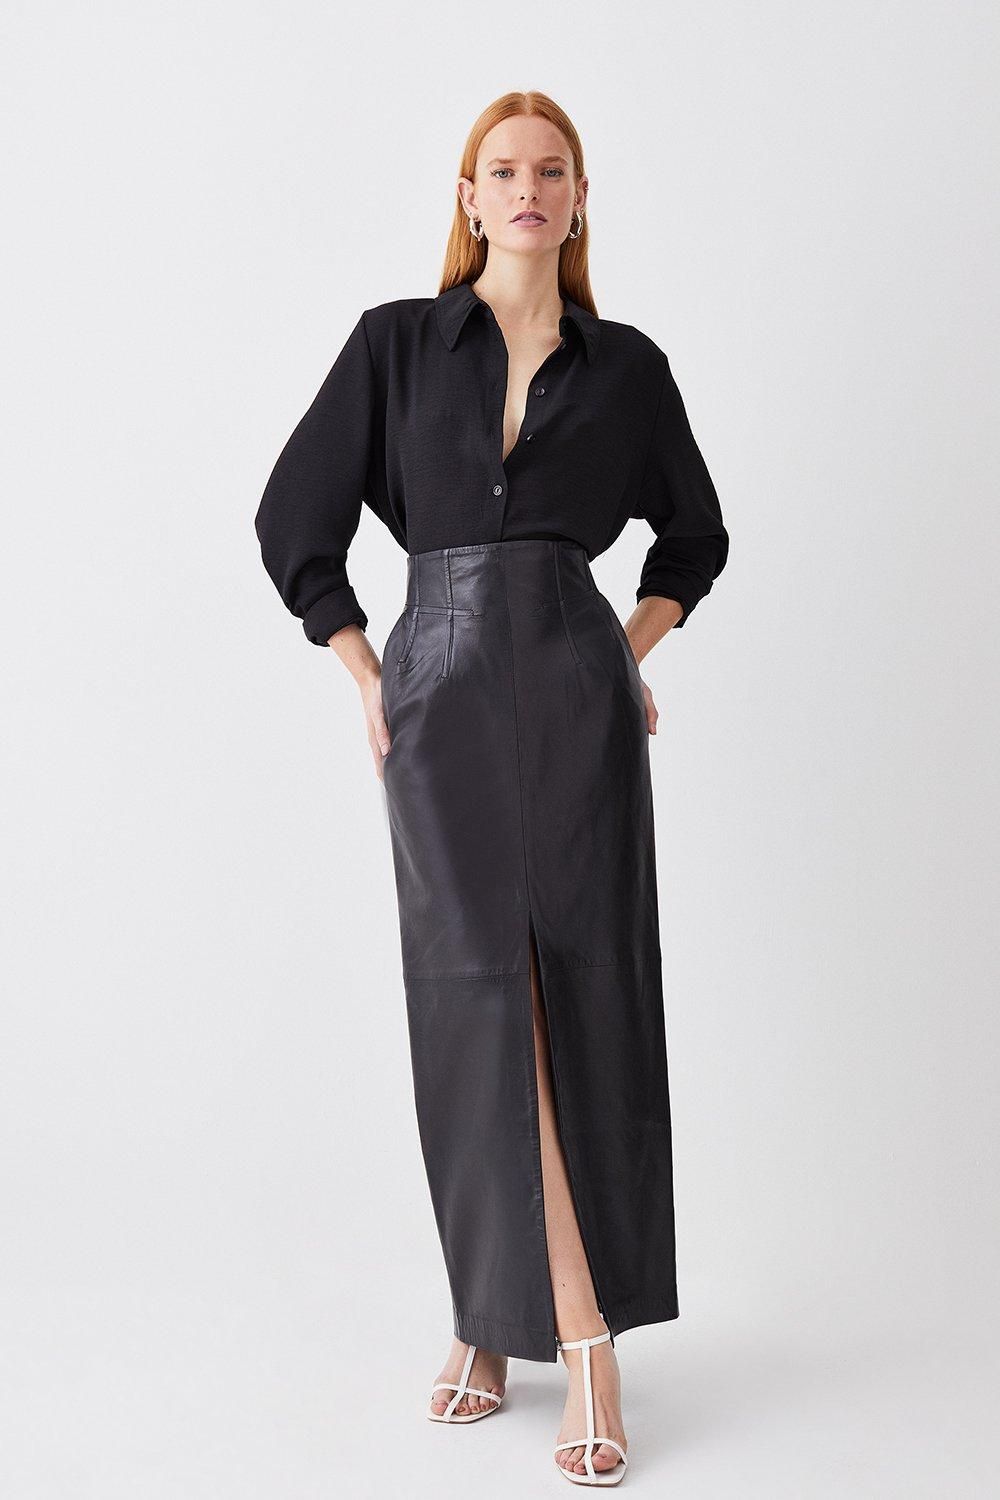 Leather High Waisted Pencil Midaxi Skirt | Karen Millen UK + IE + DE + NL